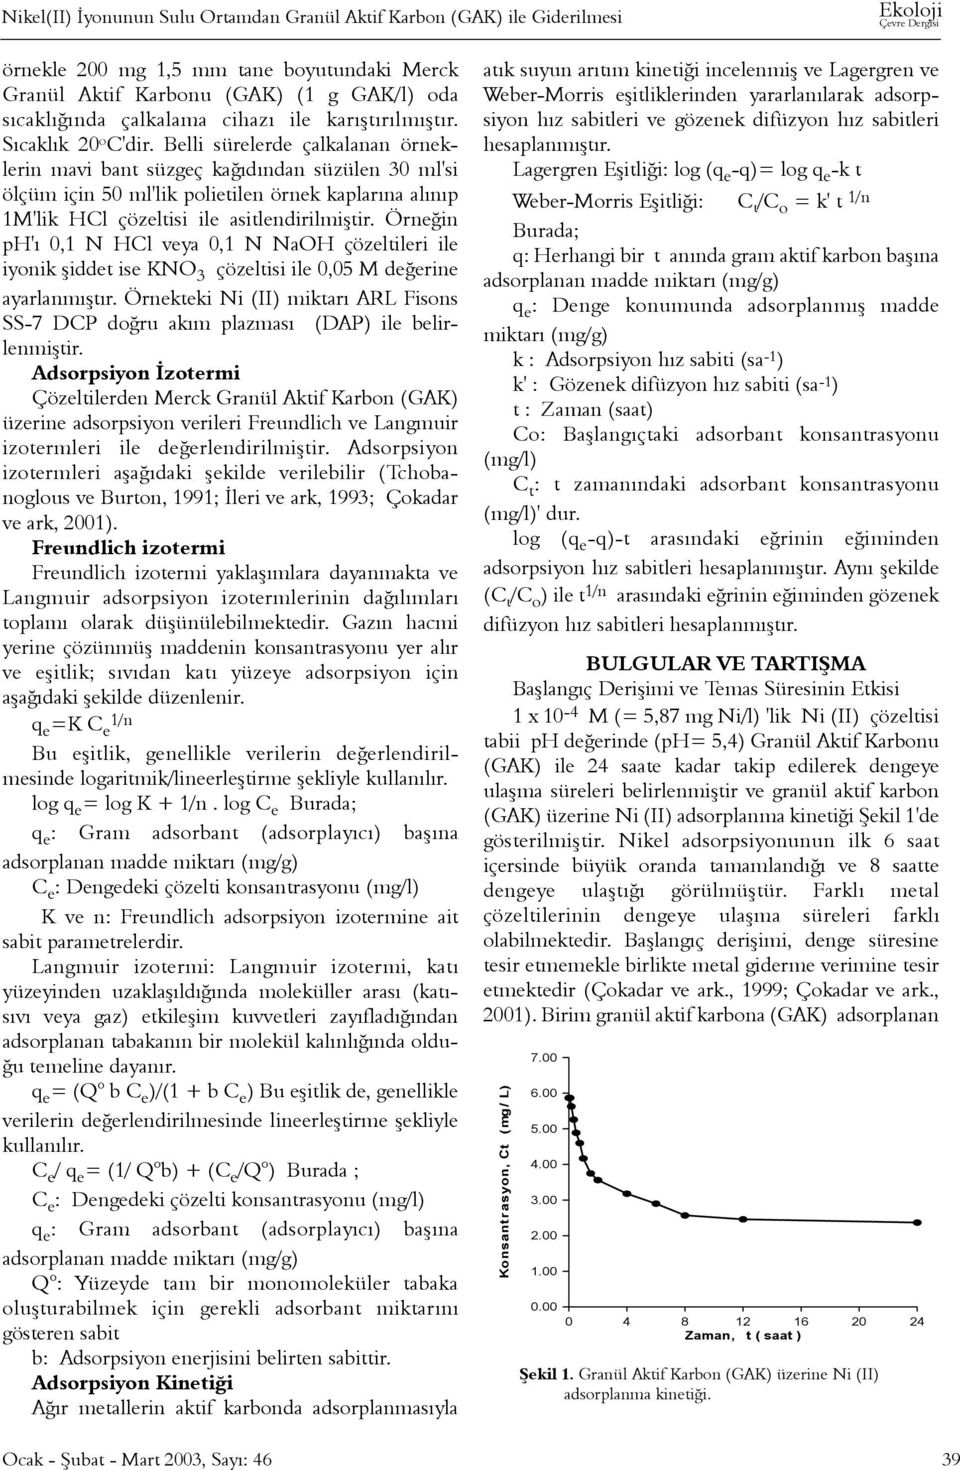 Belli sürelerde çalkalanan örneklerin mavi bant süzgeç kaðýdýndan süzülen 3 ml'si ölçüm için 5 ml'lik polietilen örnek kaplarýna alýnýp 1M'lik HCl çözeltisi ile asitlendirilmiþtir.